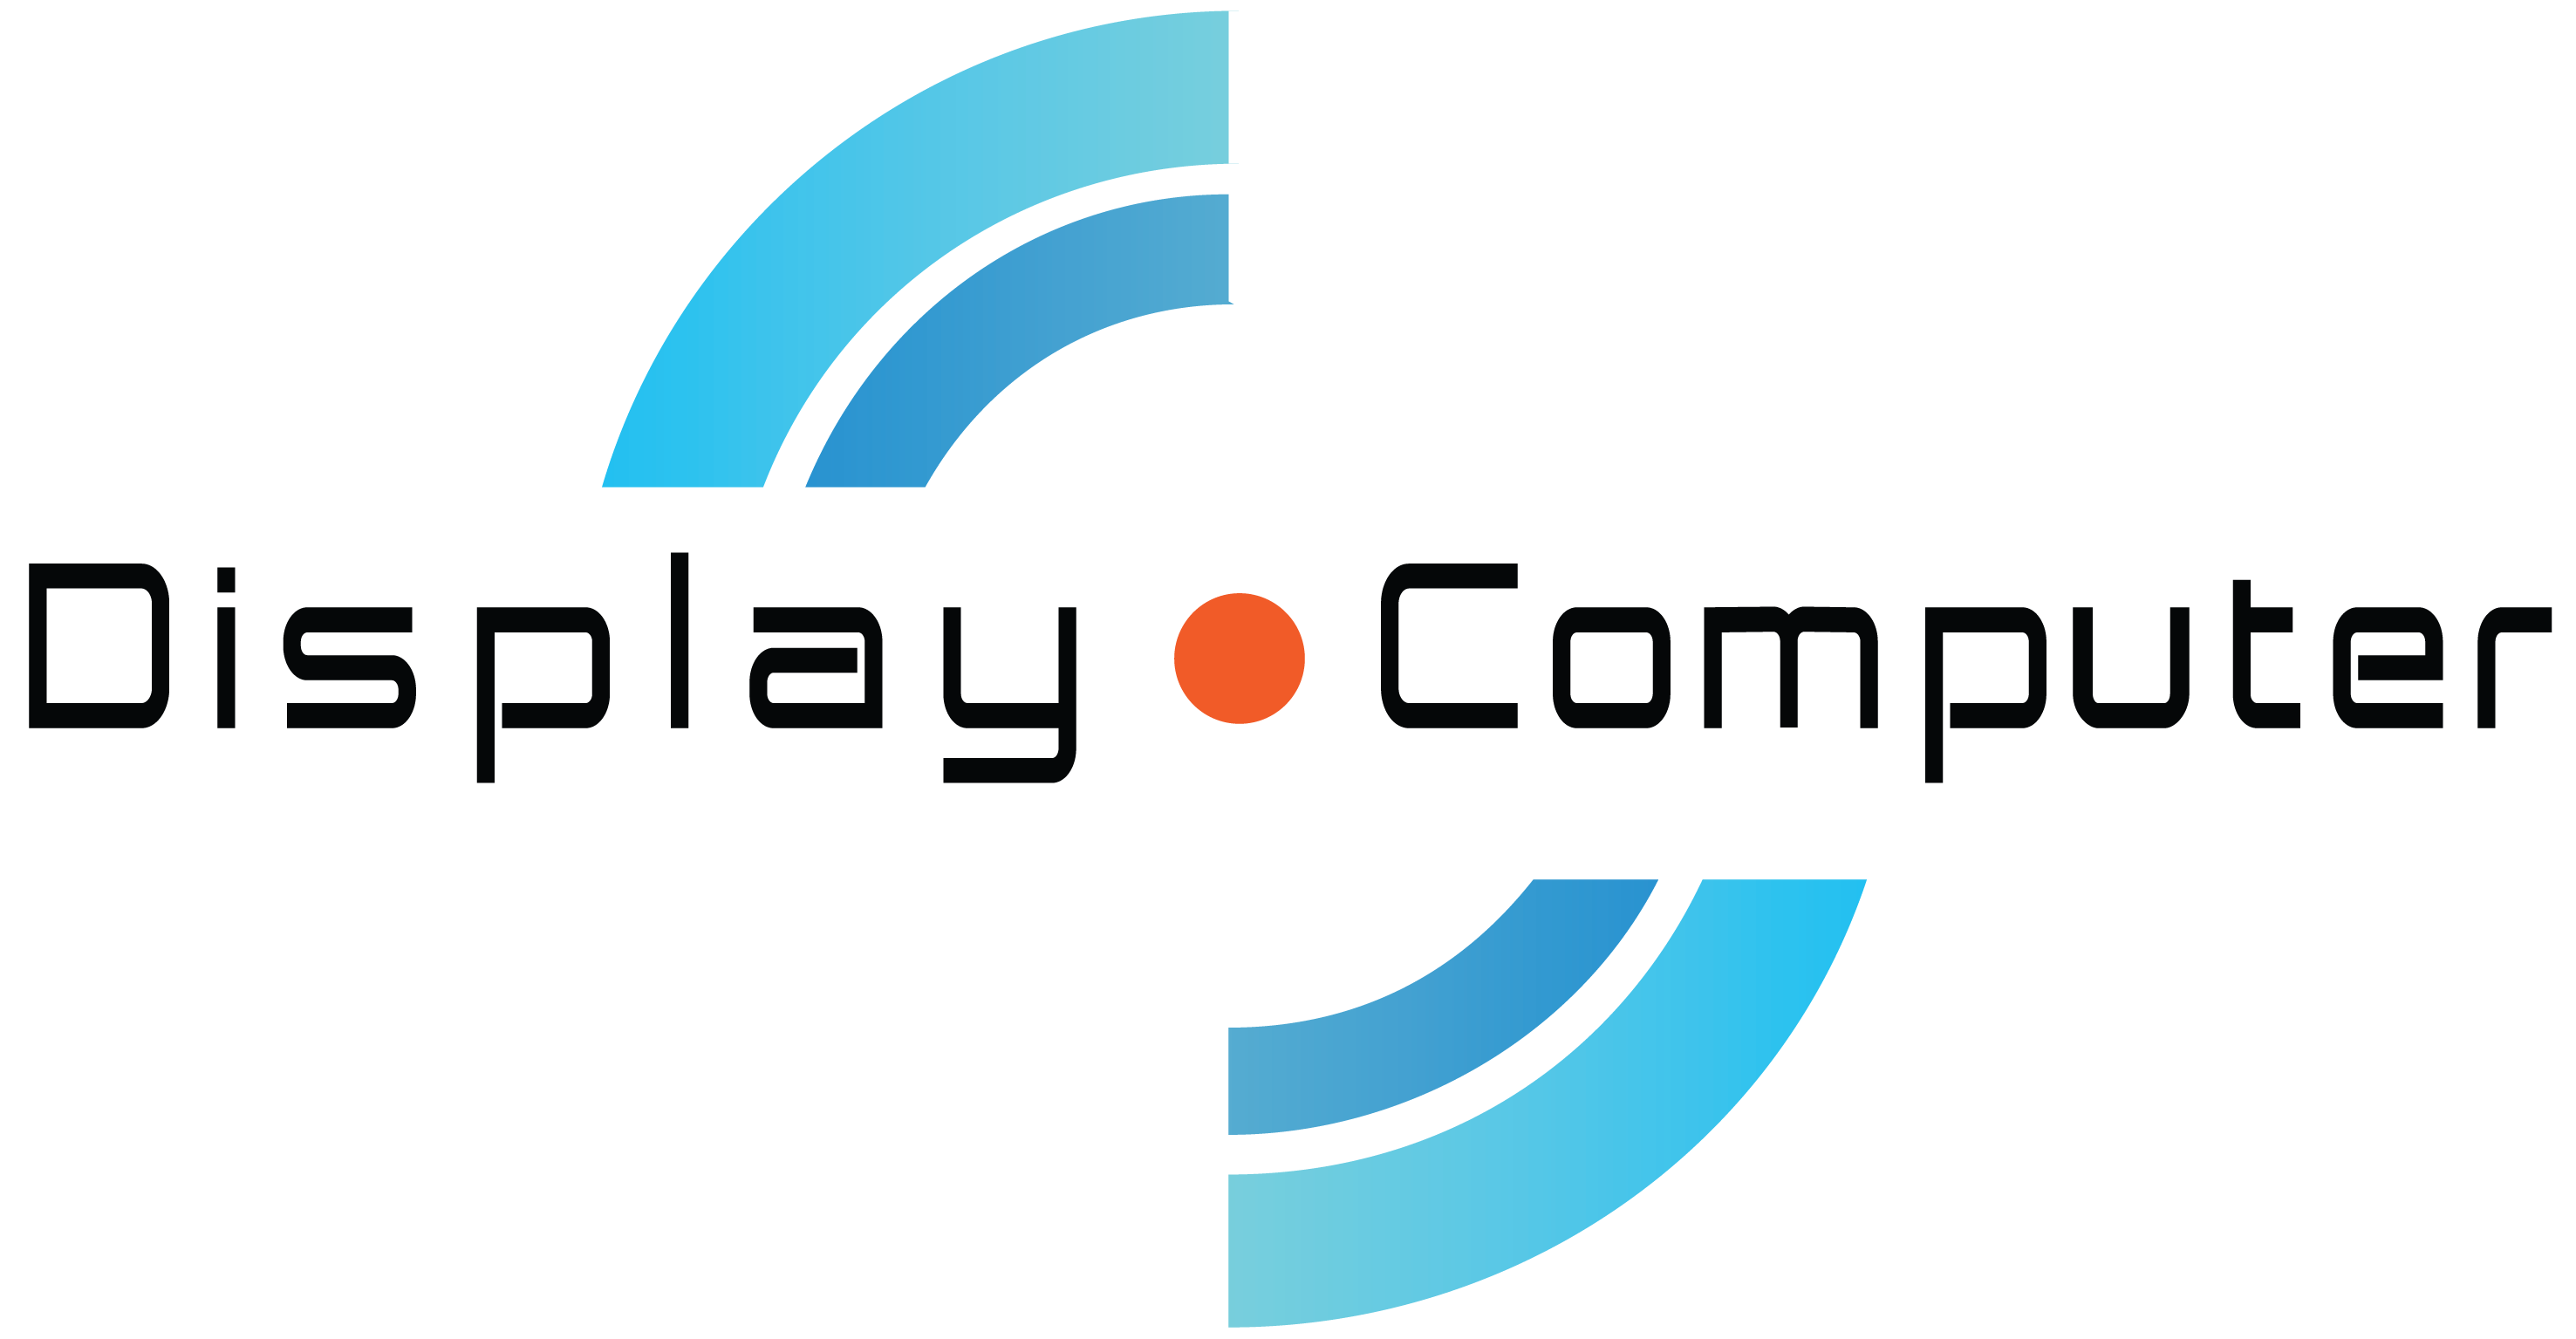 Display Computer Számítástechnikai Kereskedelmi és Szolgáltató Korlátolt Felelősségű Társaság